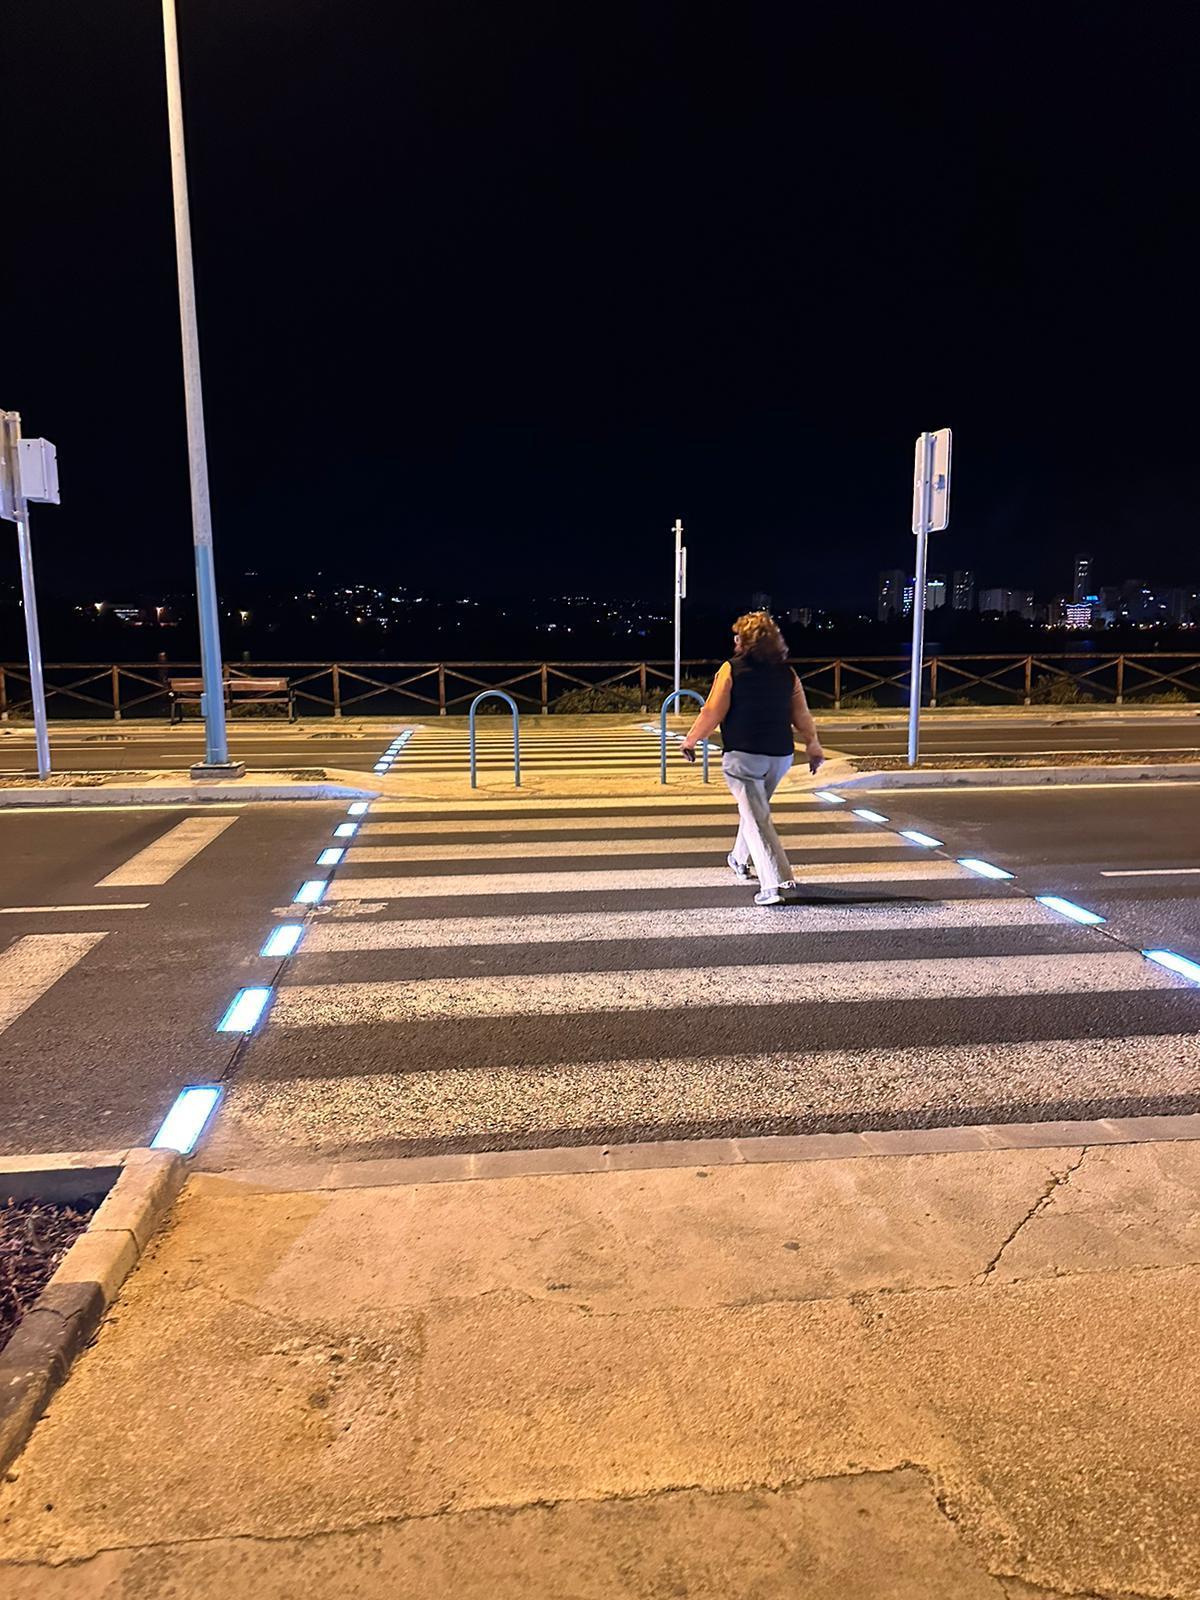 Uno de los pasos de peatones con luces que avisan a los conductores